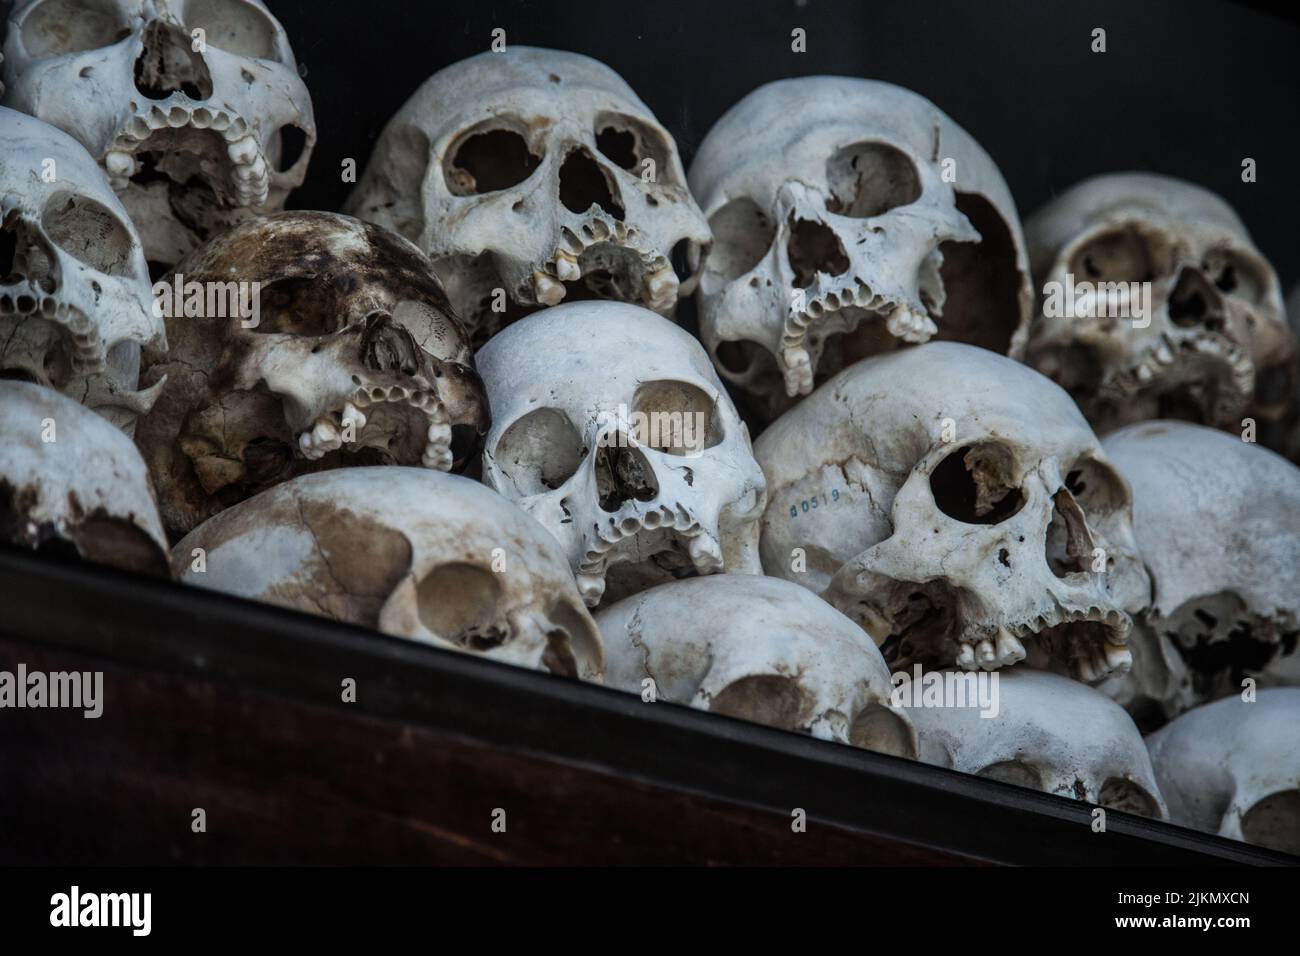 Un tas de crânes humains Banque D'Images